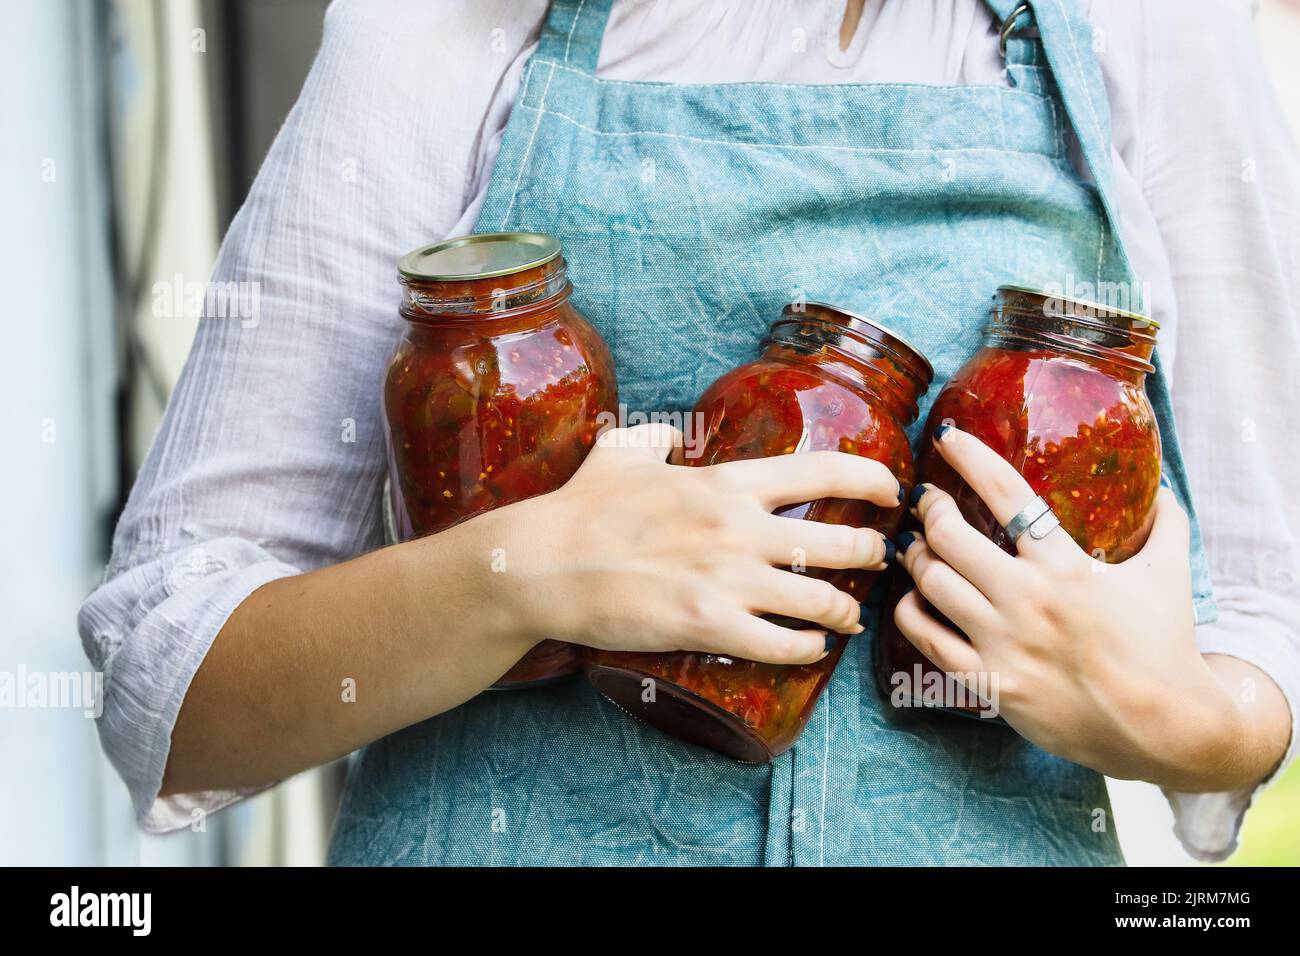 Mains de femme tenant des pots faits maison de maçon en conserve de sauce tomate. Mise au point sélective avec arrière-plan flou. Banque D'Images